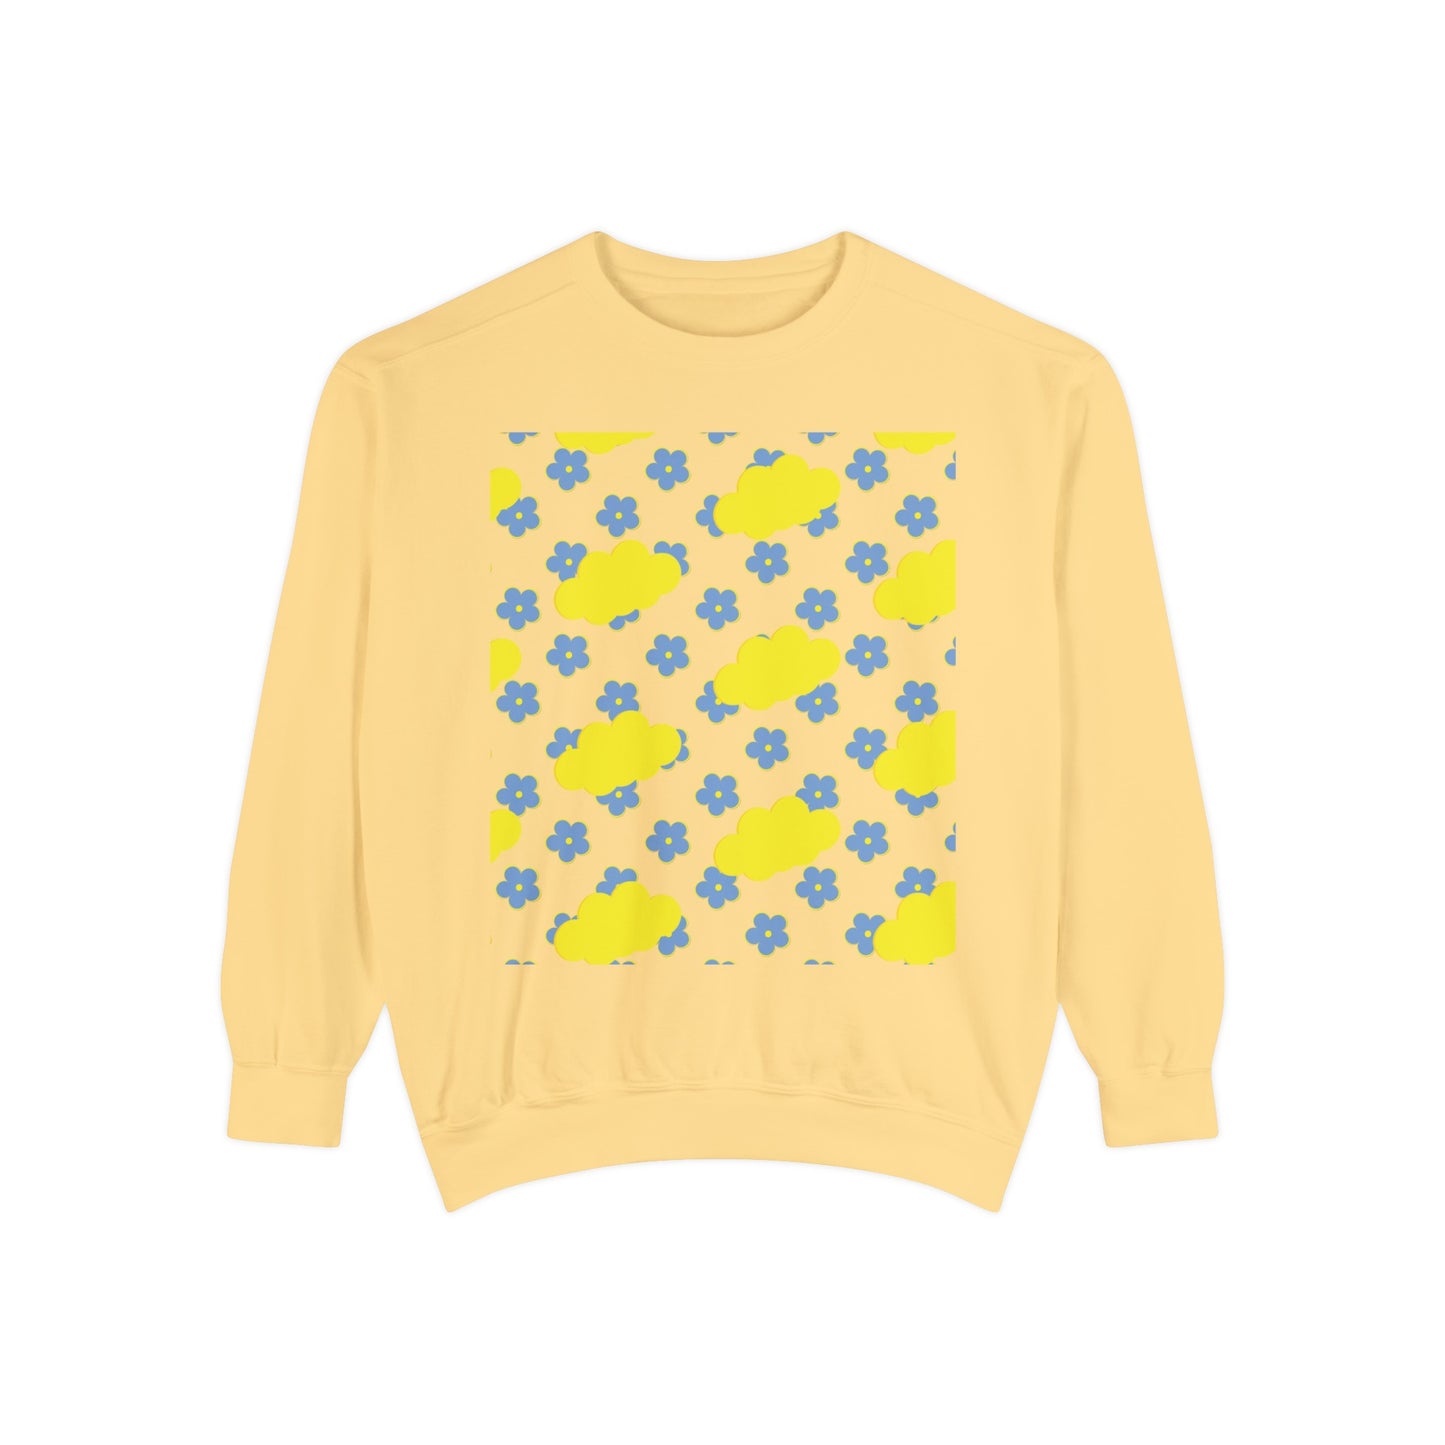 Yellow Cloud Sweatshirt